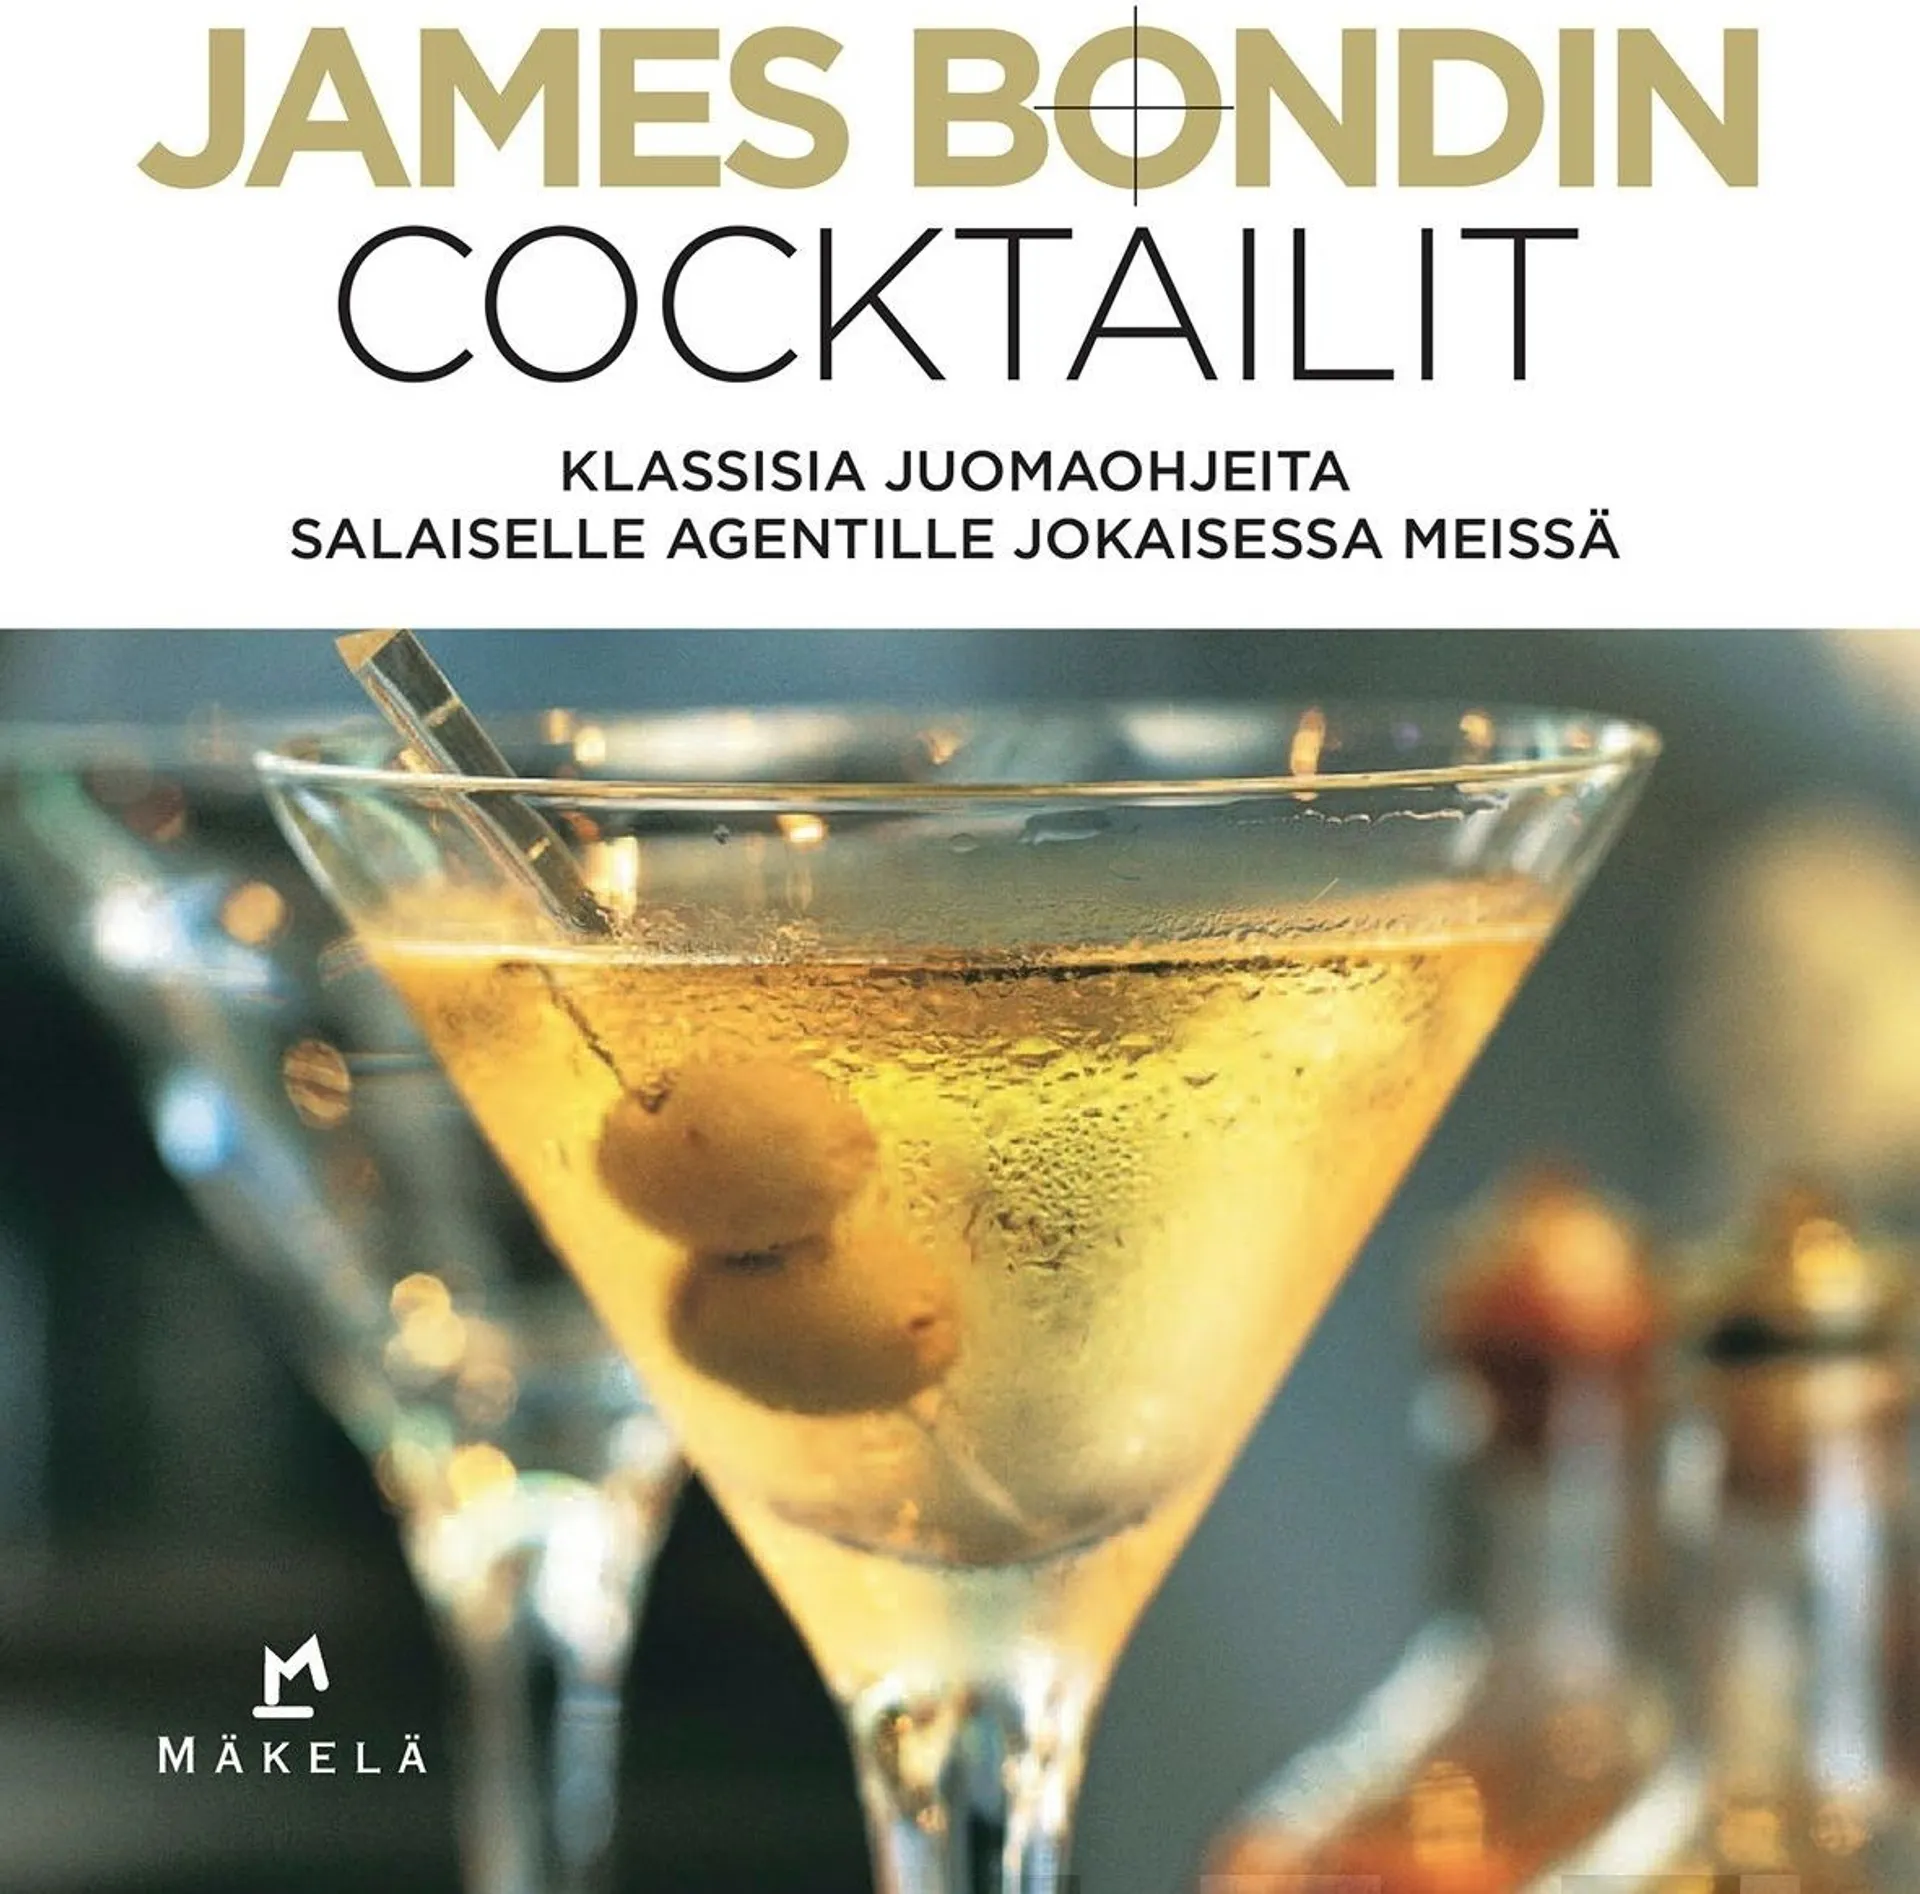 Bebo, James Bondin cocktailit - Klassisia juomaohjeita salaiselle agentille jokaisessa meissä